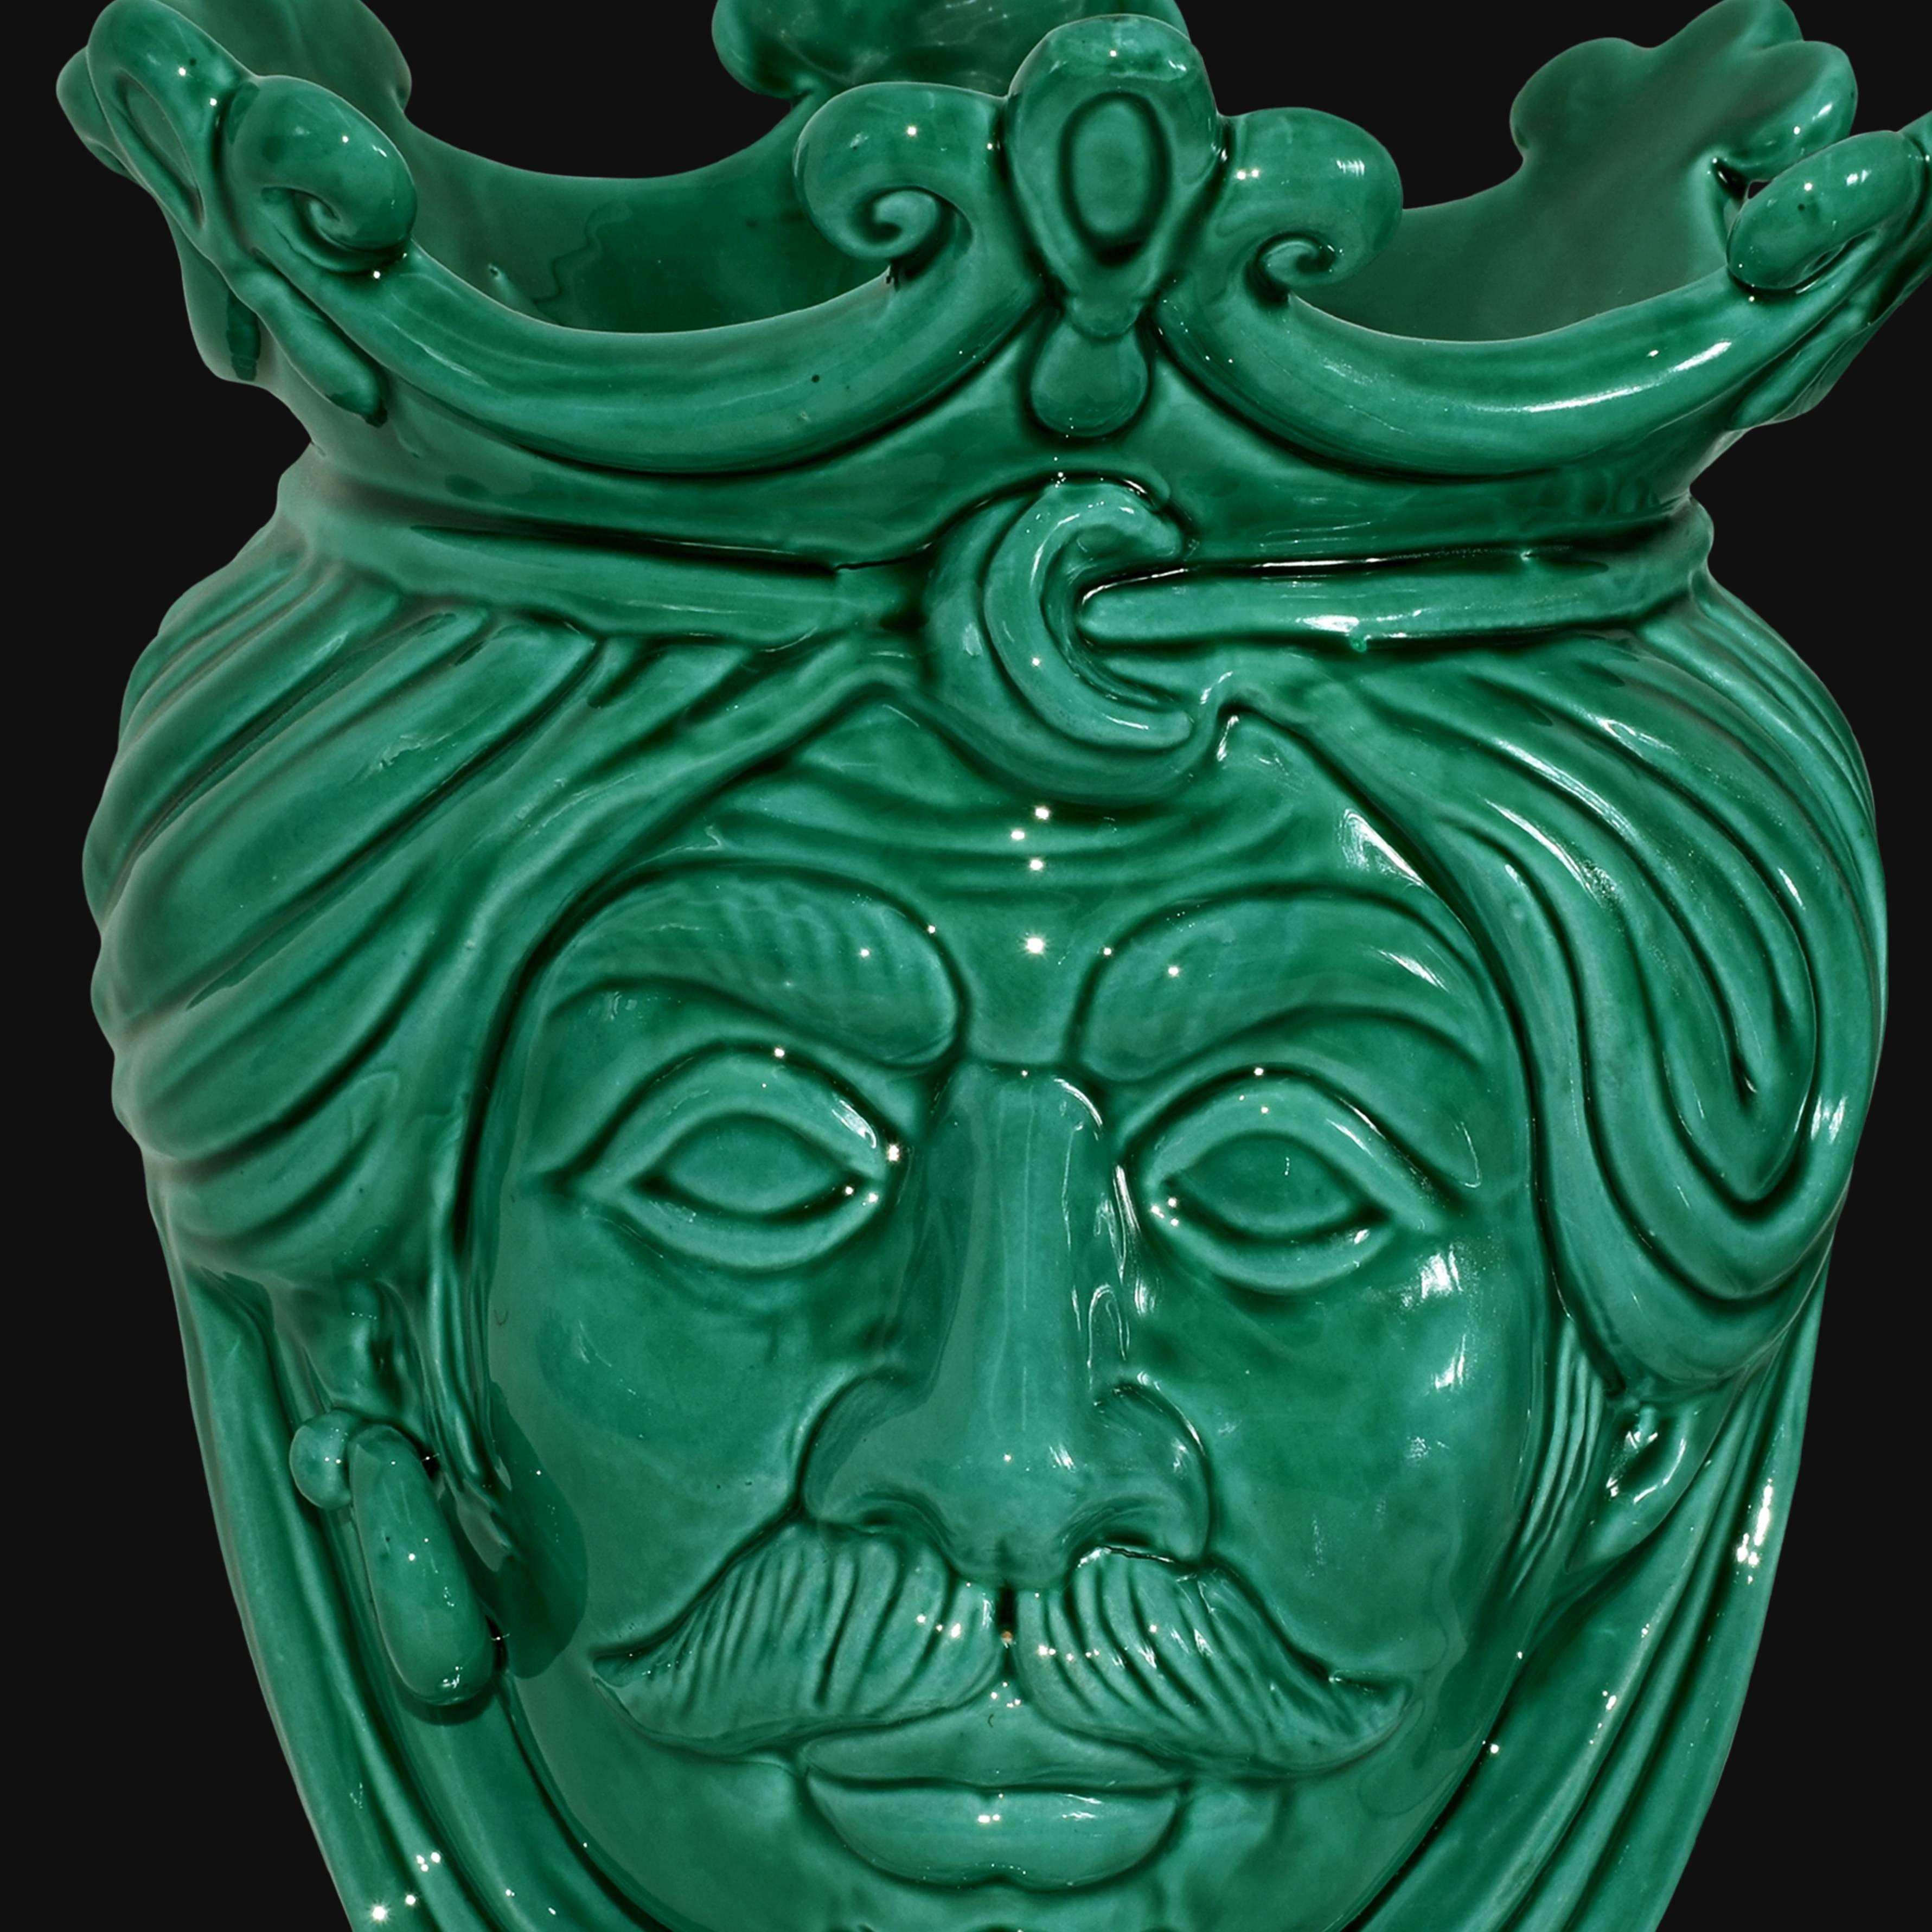 Testa h 25 liscia Verde Smeraldo maschio - Ceramiche di Caltagirone Sofia